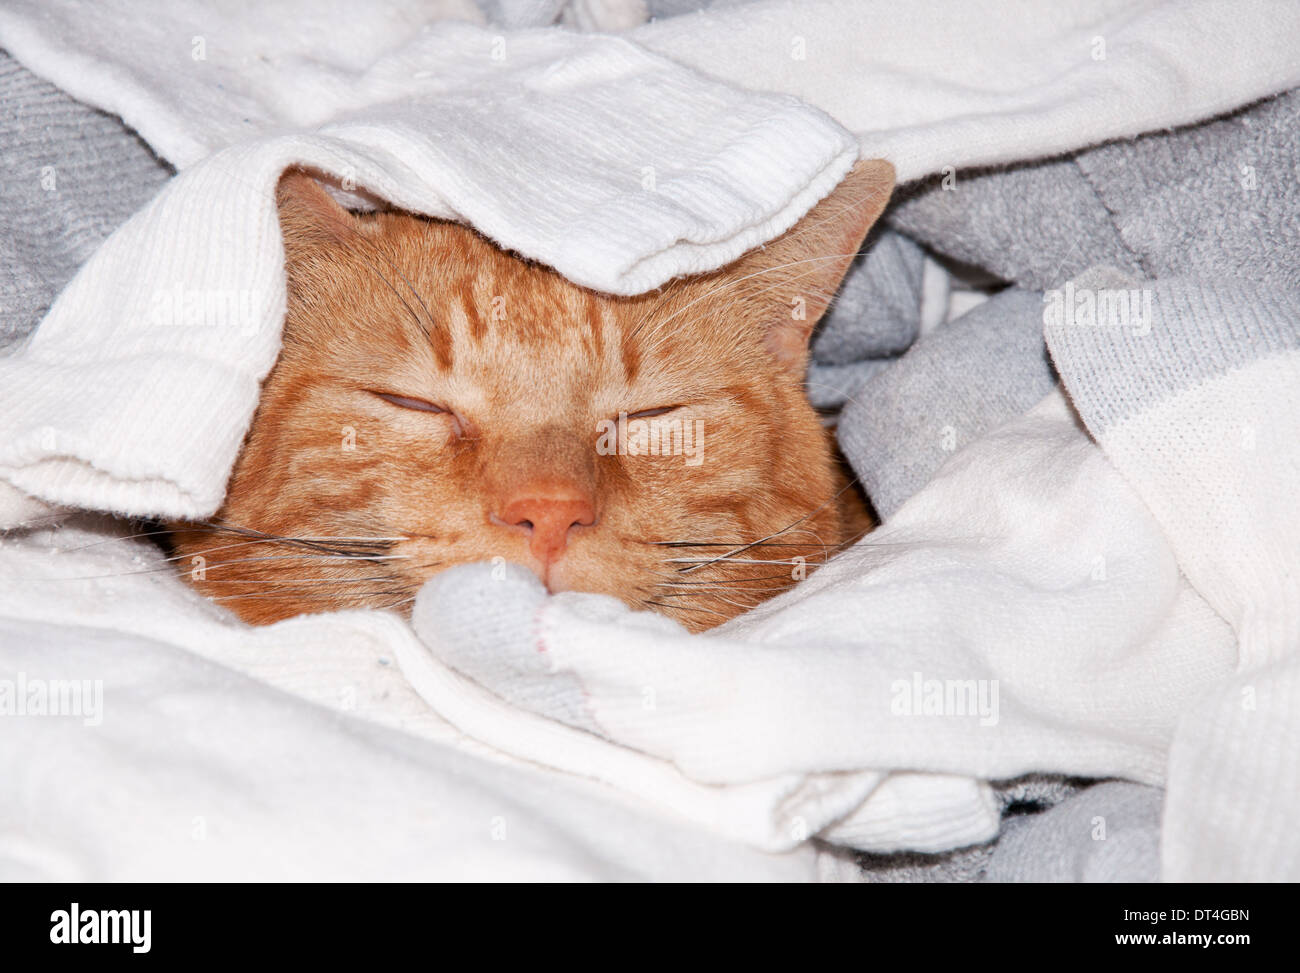 Ginger tabby cat dormir dans du linge propre - kitty ciel Banque D'Images